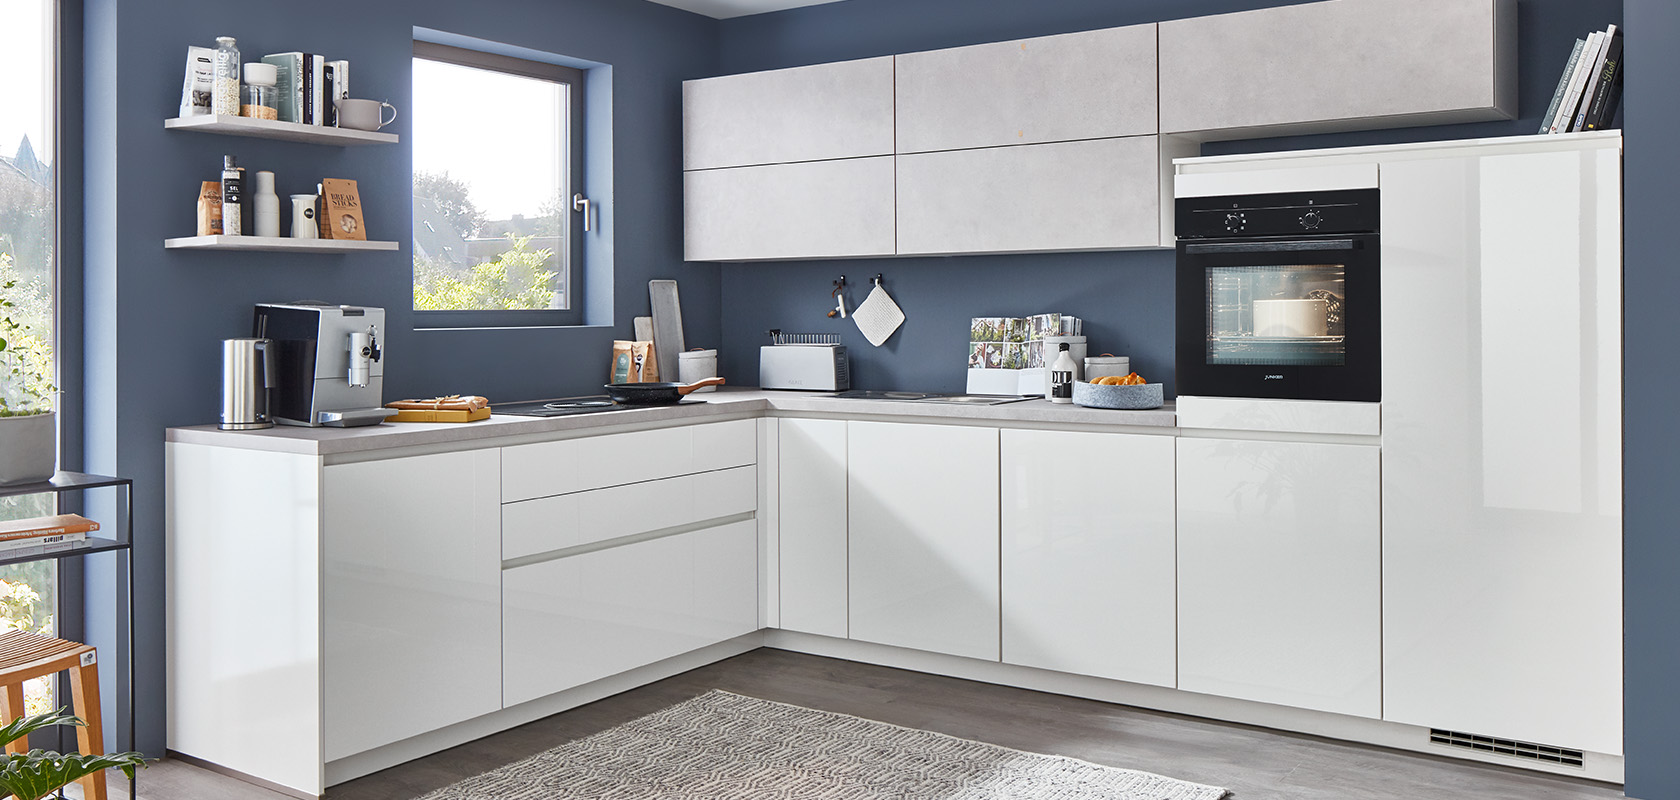 Cocina moderna con gabinetes blancos, electrodomésticos elegantes y acentos grises. Un espacio ordenado con una estética minimalista y un ambiente cómodo y acogedor.